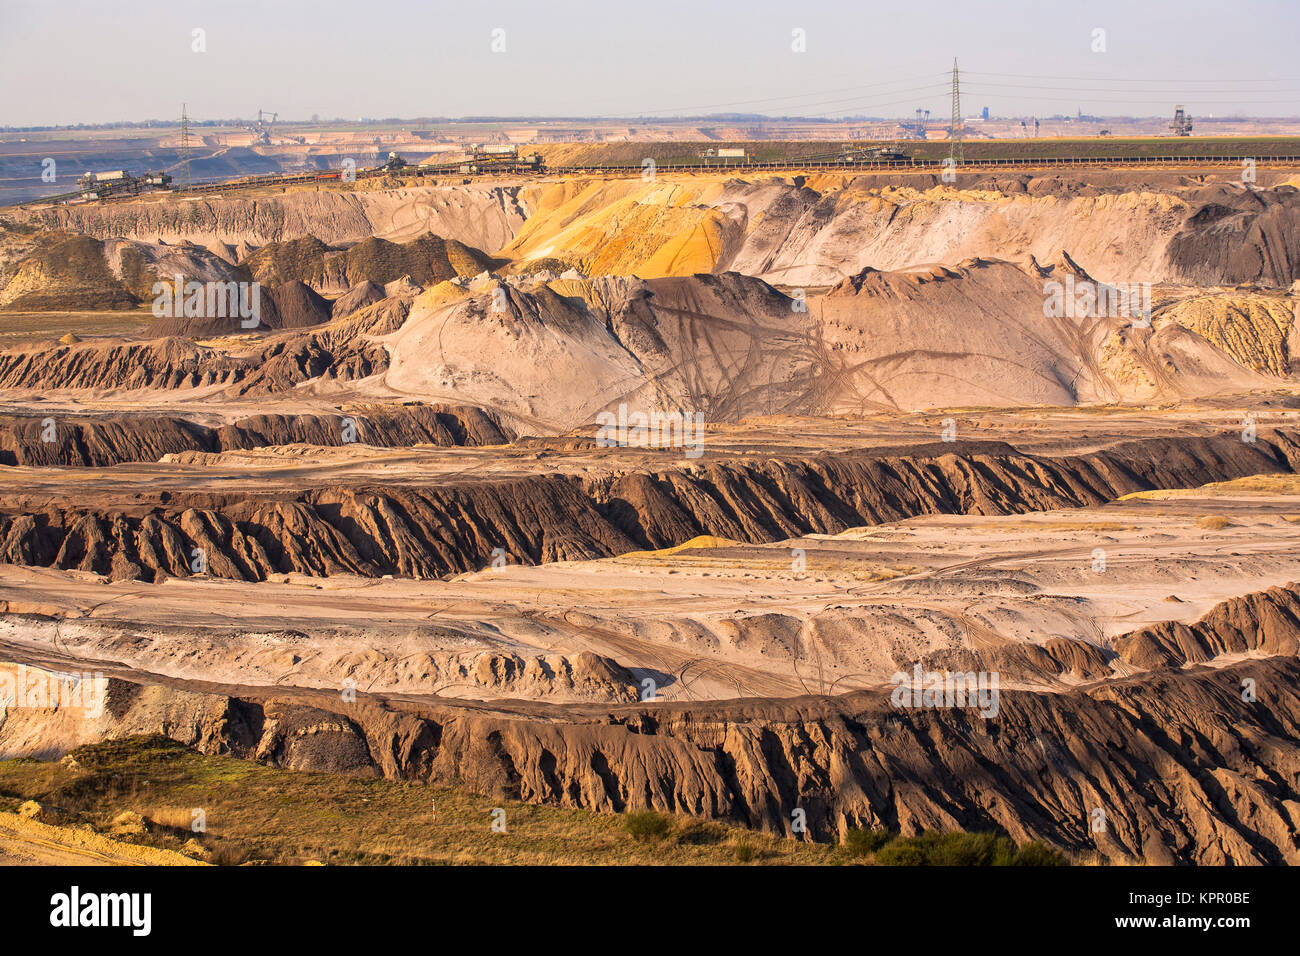 L'Allemagne, les mines à ciel ouvert de lignite près de Juechen Garzweiler. Deutschland, Braunkohletagebau Garzweiler bei Juechen. Banque D'Images